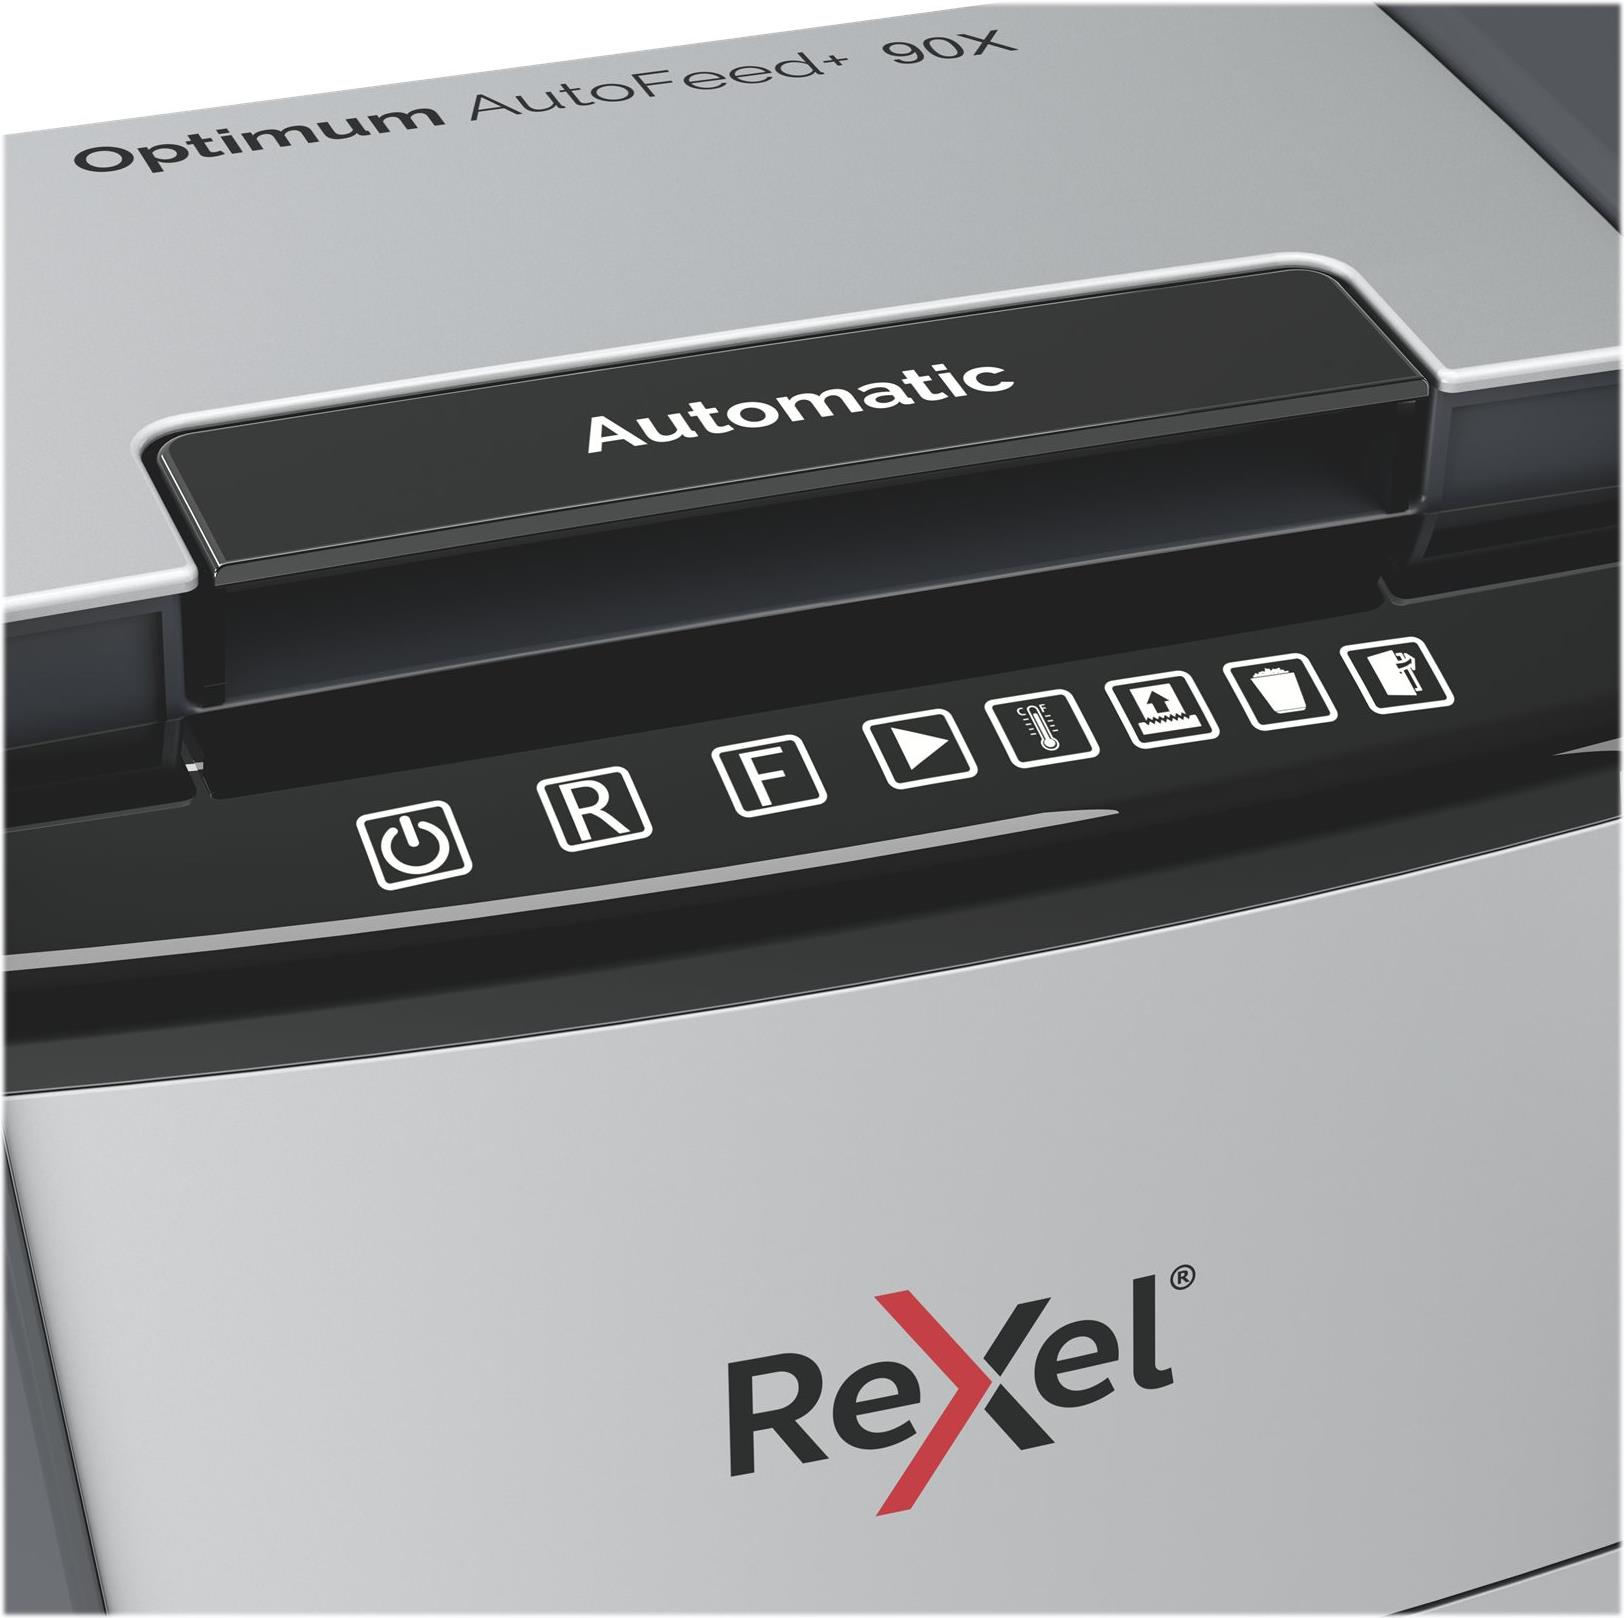 Rexel Optimum AutoFeed+ 90X